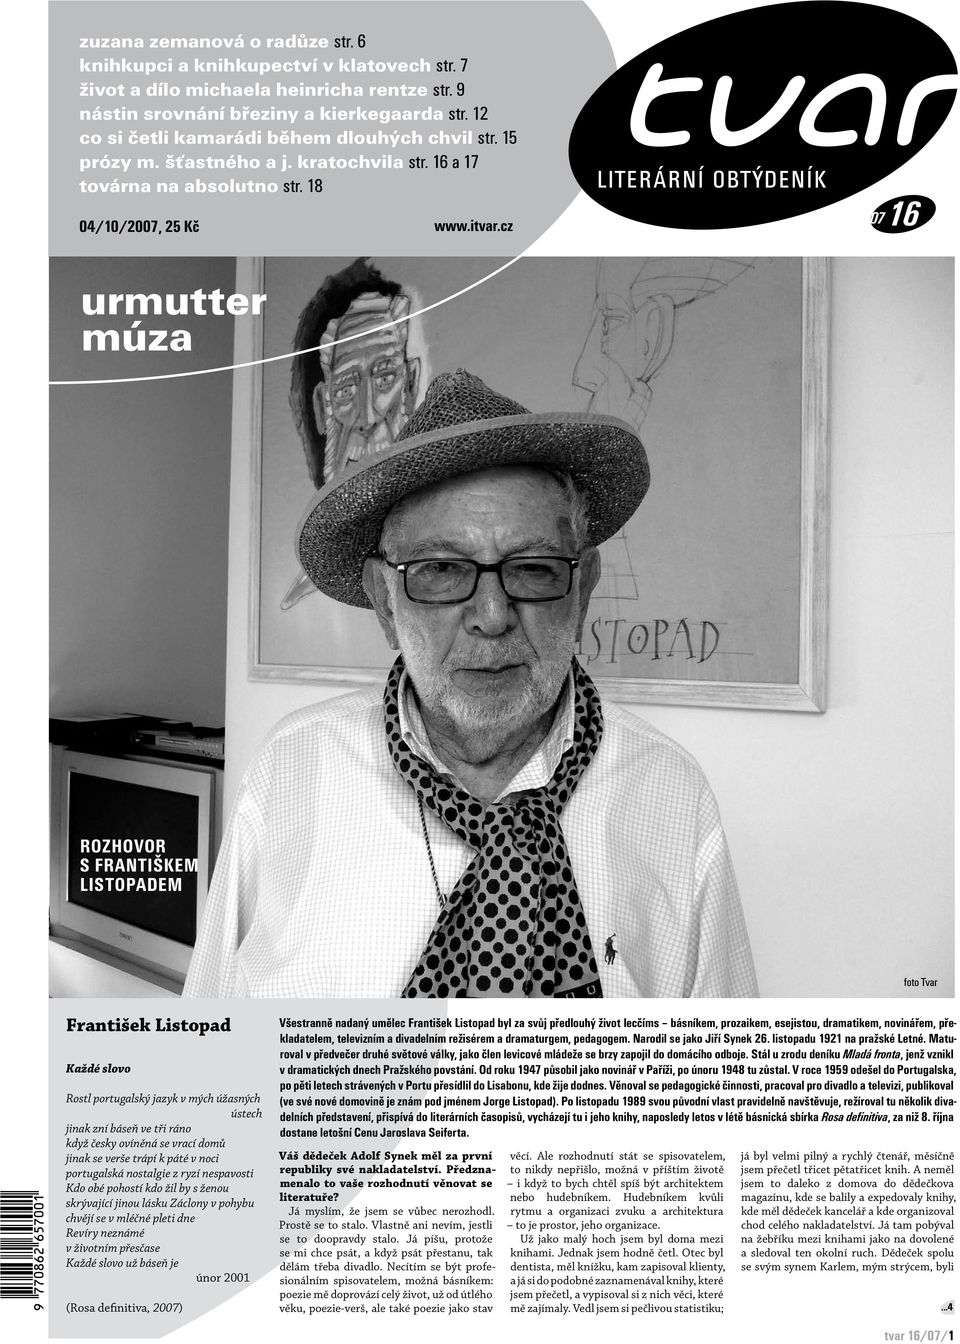 urmutter múza František Listopad 04/10/2007, 25 Kč tvar 16/07/1 - PDF  Stažení zdarma